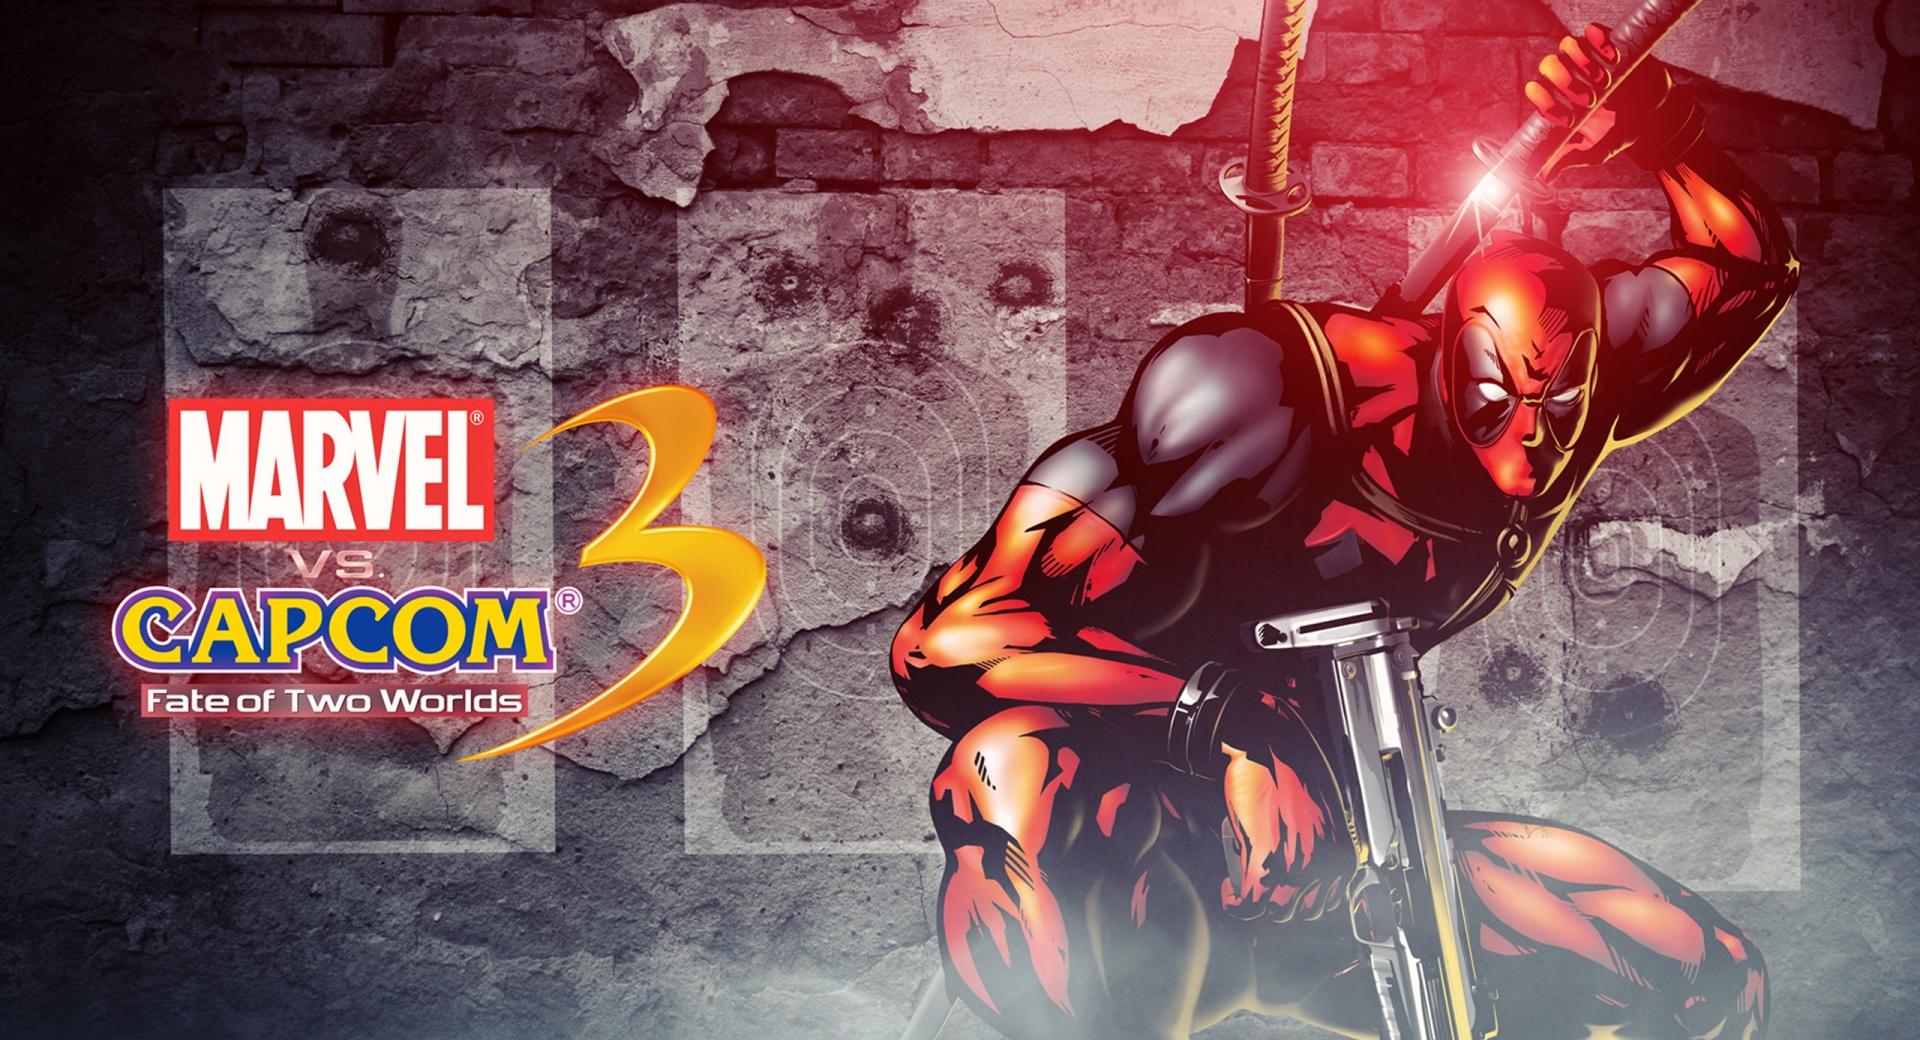 Marvel vs Capcom 3 - Deadpool at 1024 x 1024 iPad size wallpapers HD quality